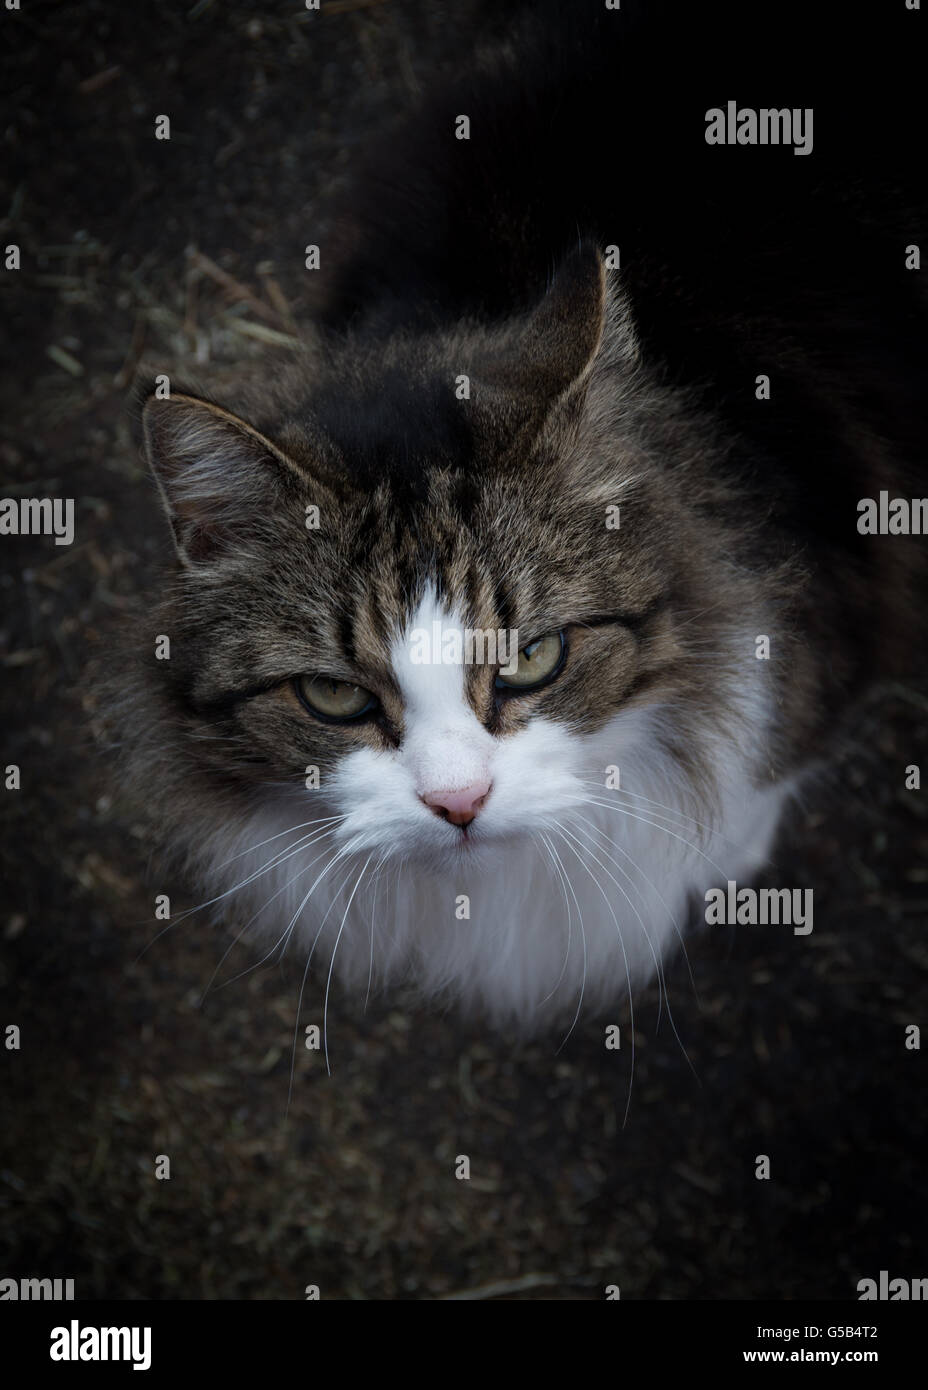 Largo pelaje atigrado barn cat mirando hacia el fotógrafo Foto de stock